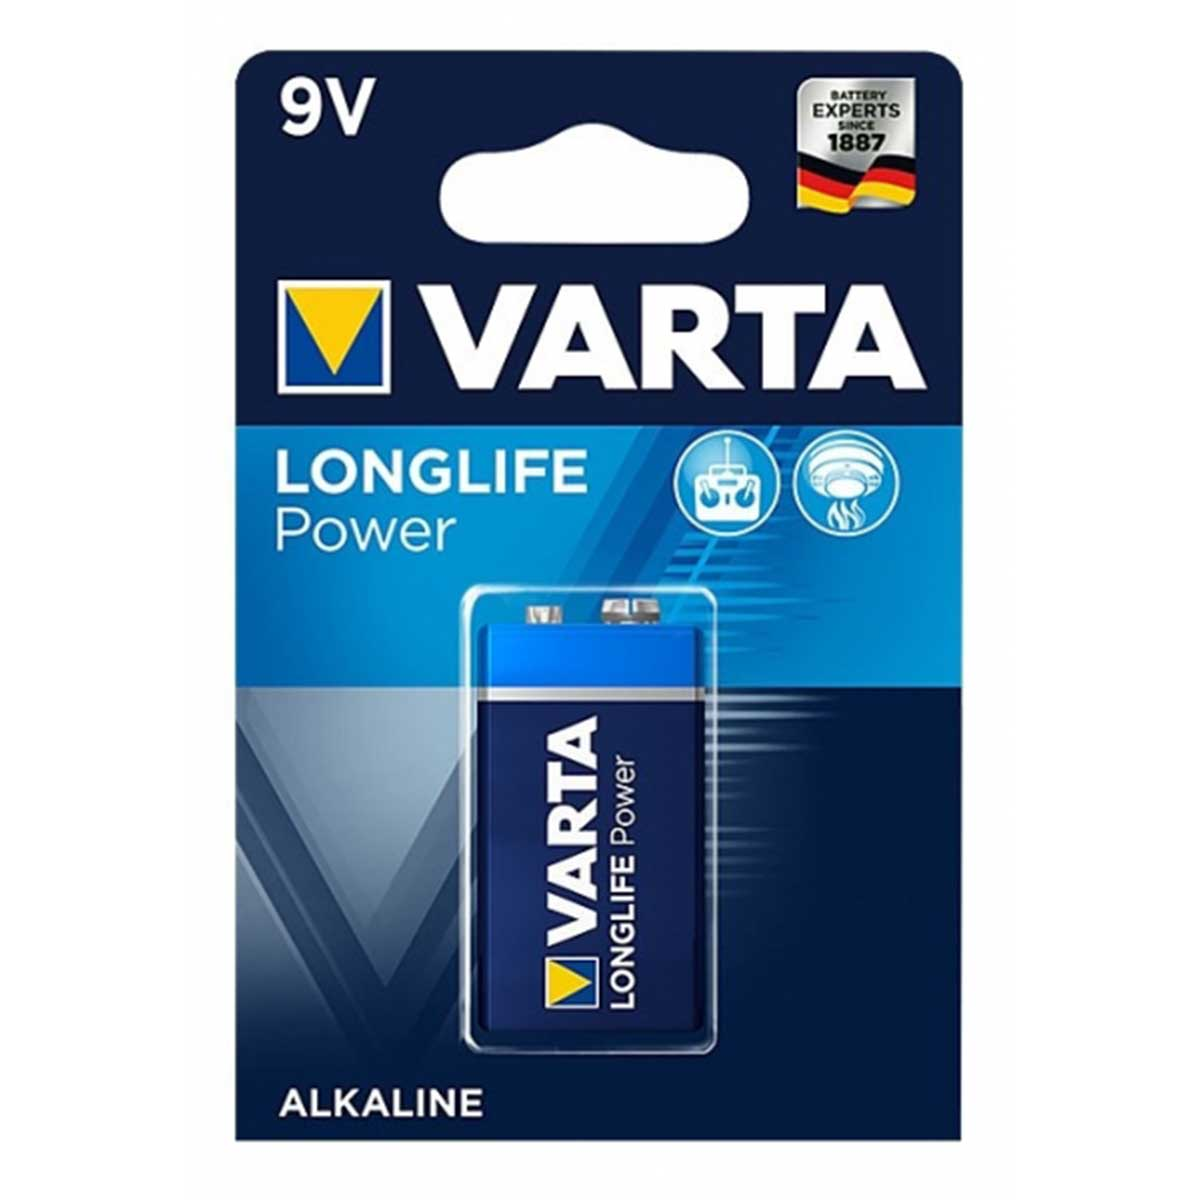 Batterie Volt, (1er Power Block 6LR61 AlMn, Mando Ah Distancia 9 Longlife Batterie, Blister) 4922 0.58 VARTA 9V